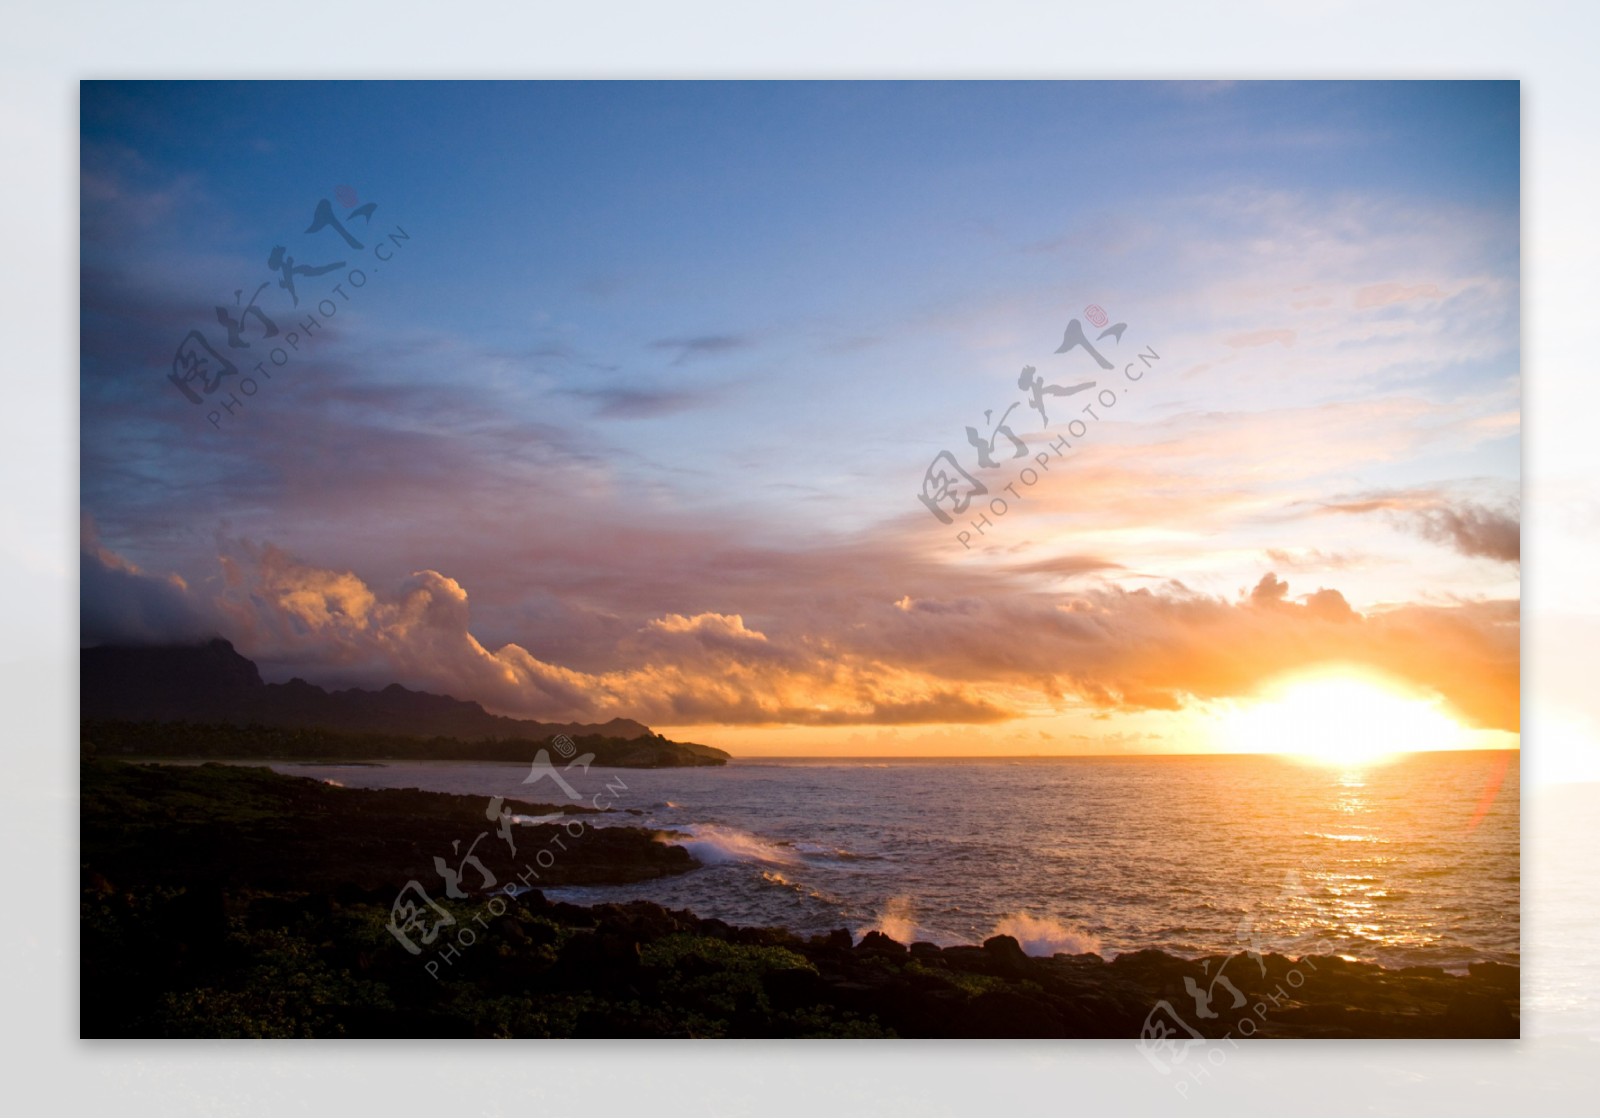 夏威夷夕阳美景图片